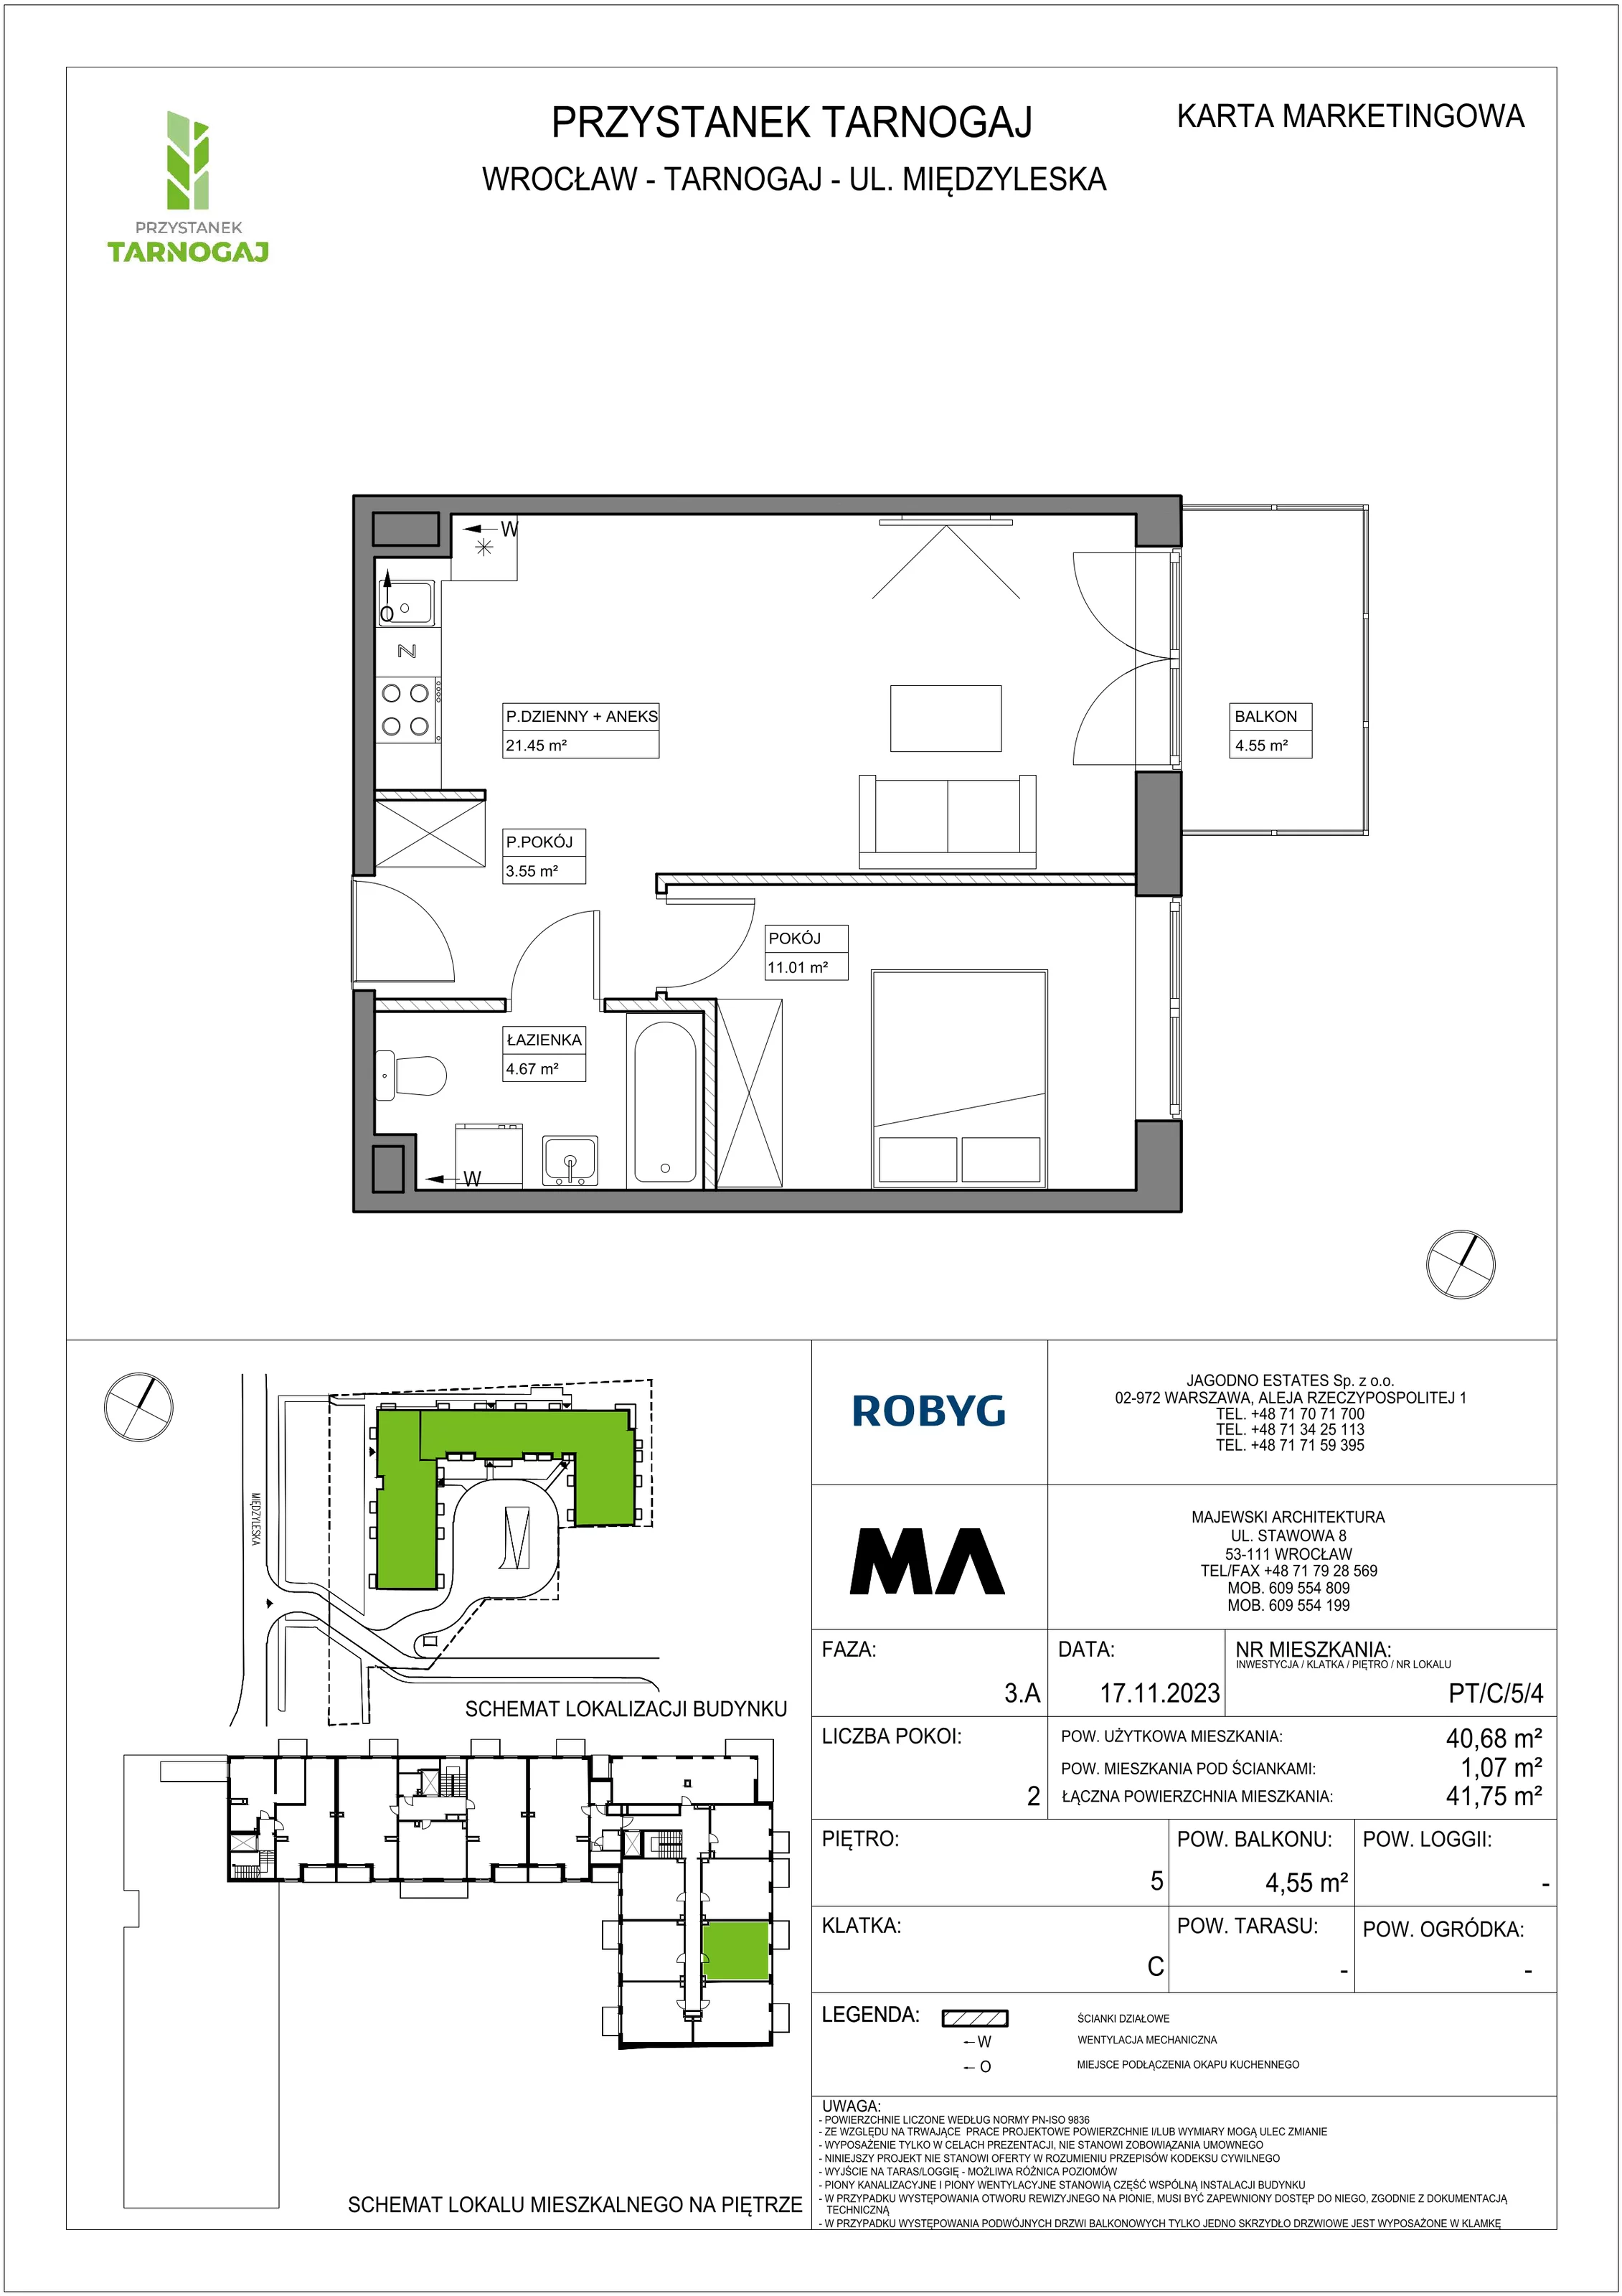 Mieszkanie 40,68 m², piętro 5, oferta nr PT/C/5/4, Przystanek Tarnogaj, Wrocław, Tarnogaj, Krzyki, ul. Międzyleska / Gazowa